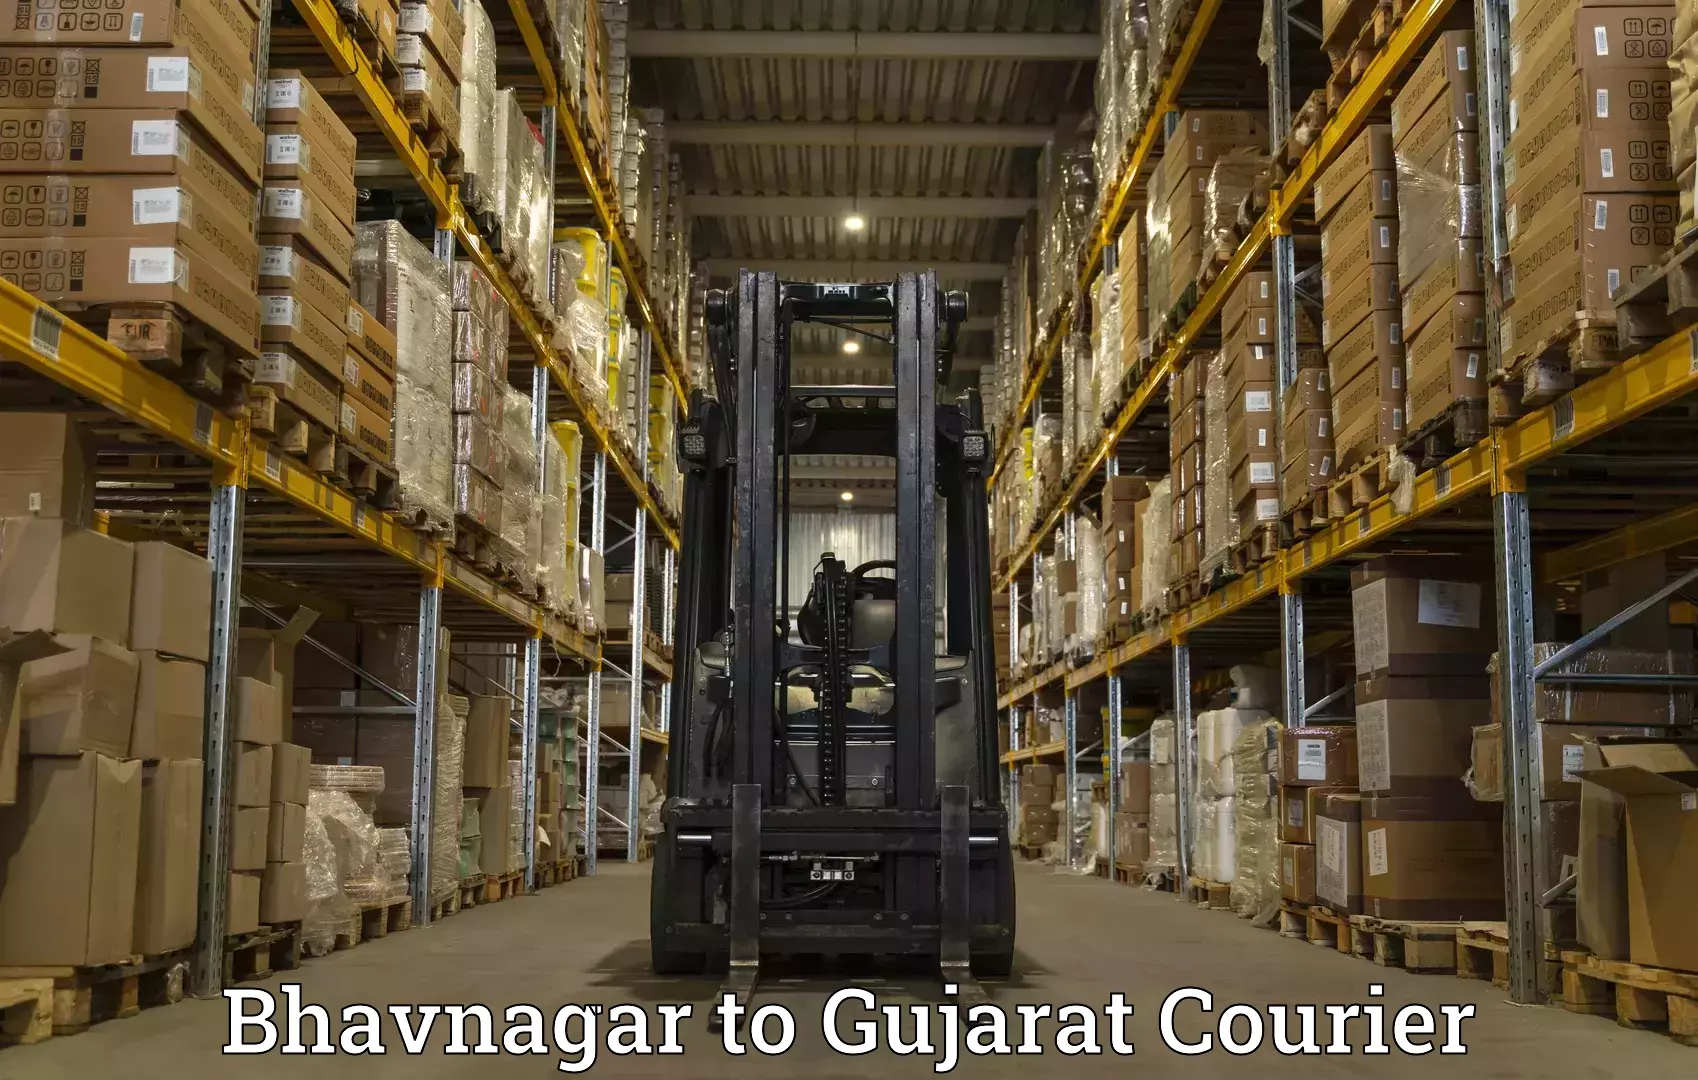 Global parcel delivery Bhavnagar to Mundra